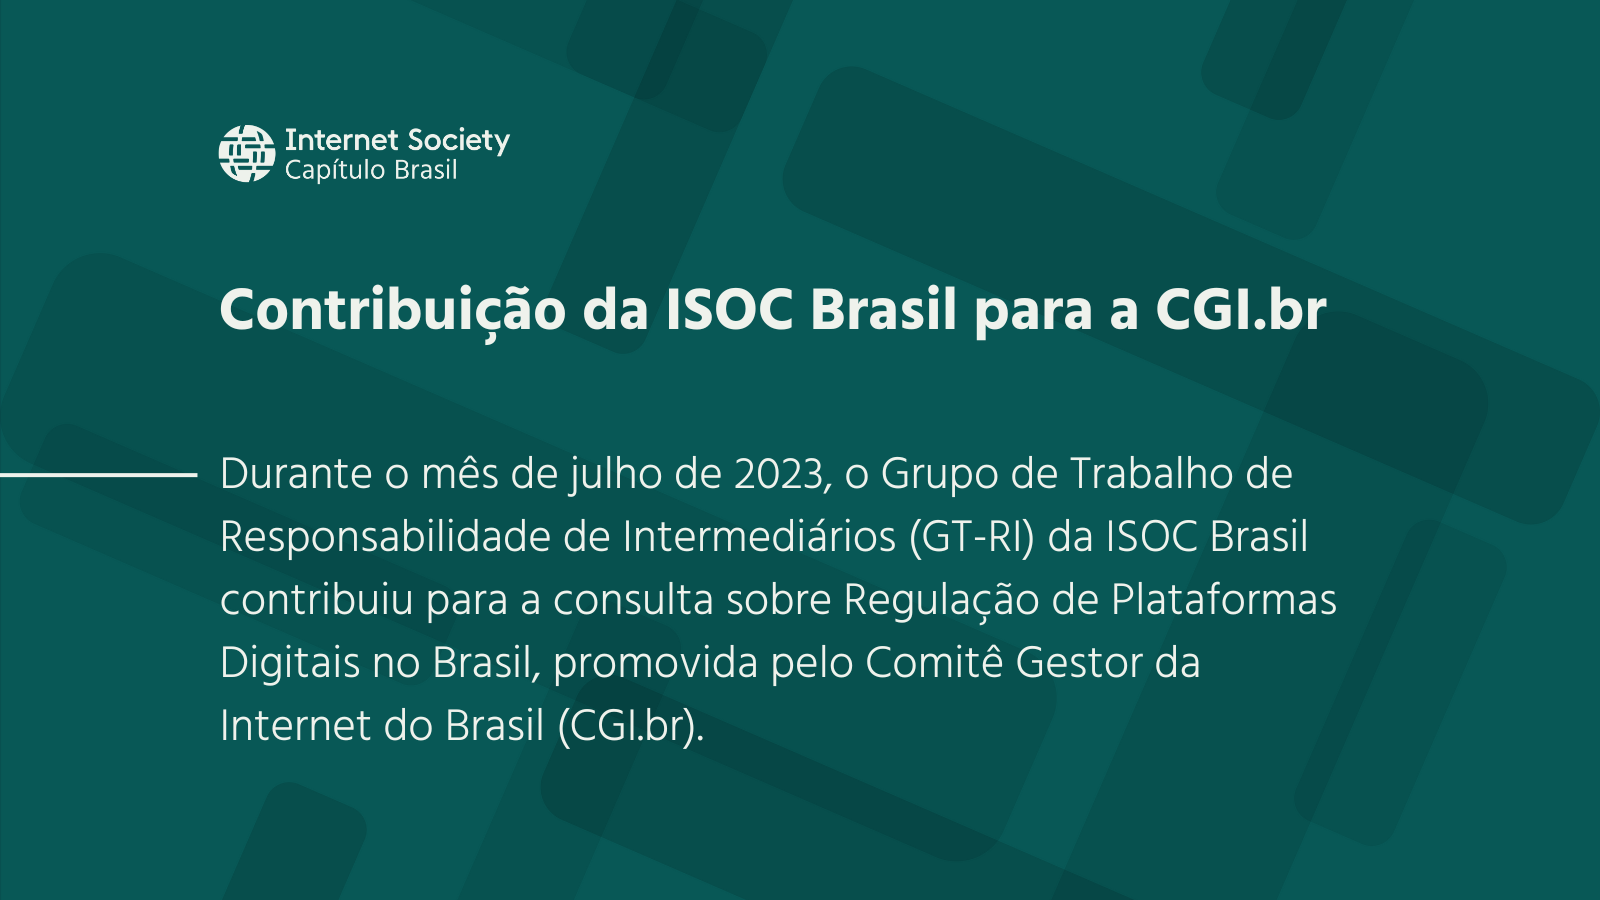 Consulta sobre Regulação de Plataformas Digitais no Brasil promovida pelo Comitê Gestor da Internet do Brasil (CGI.br)